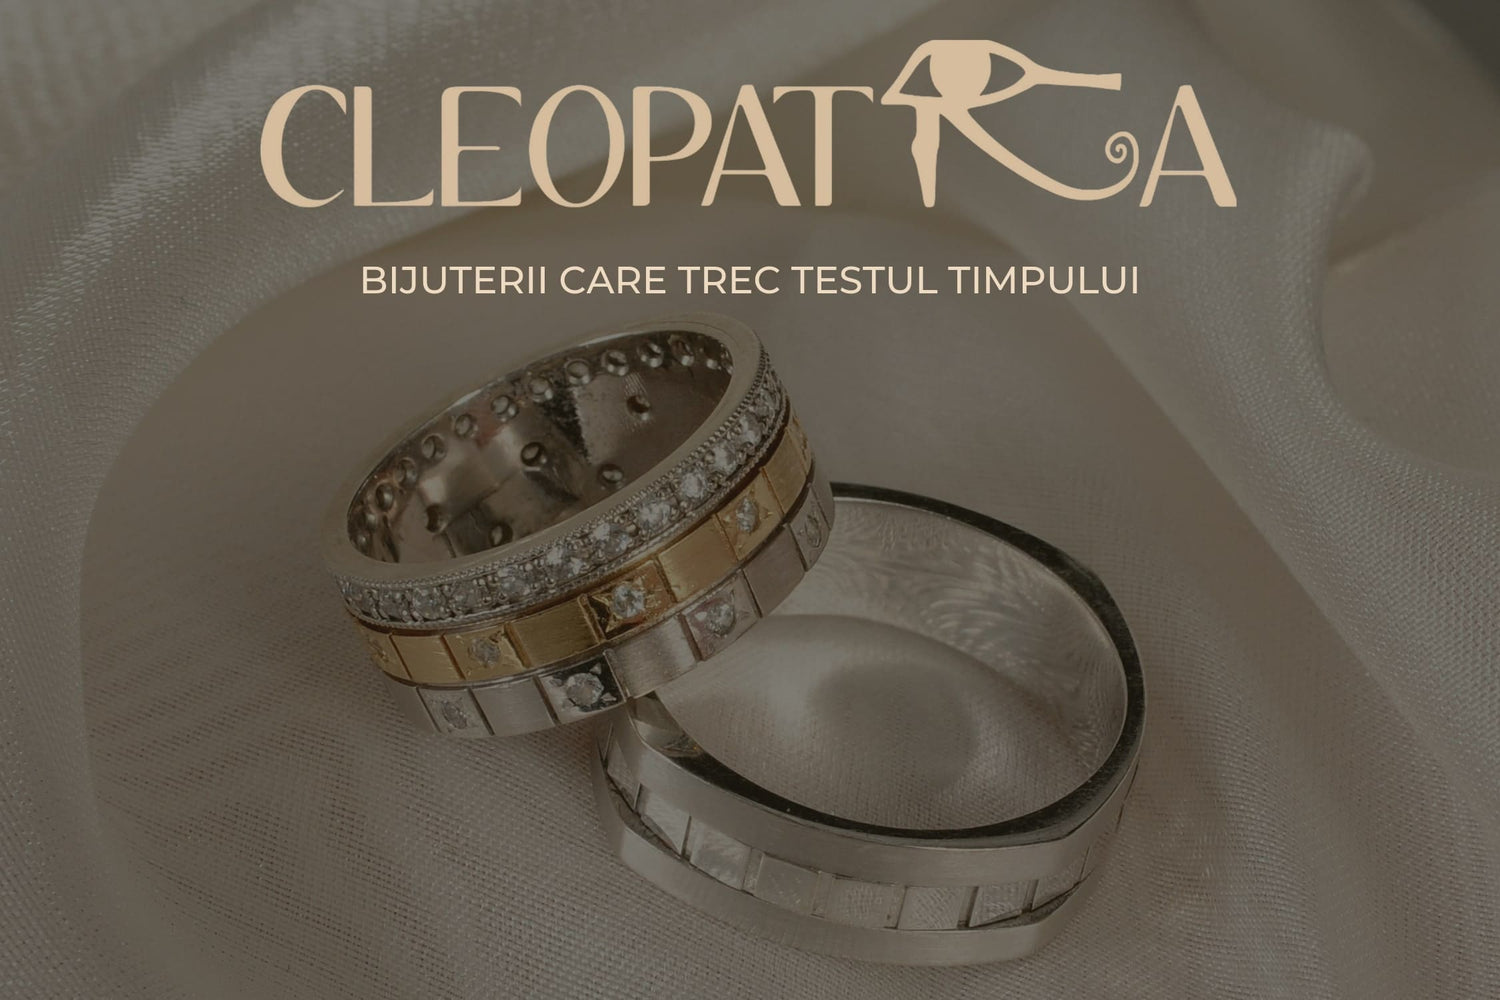 Bijuteria Cleopatra - Bijuterii care trec testul timpului